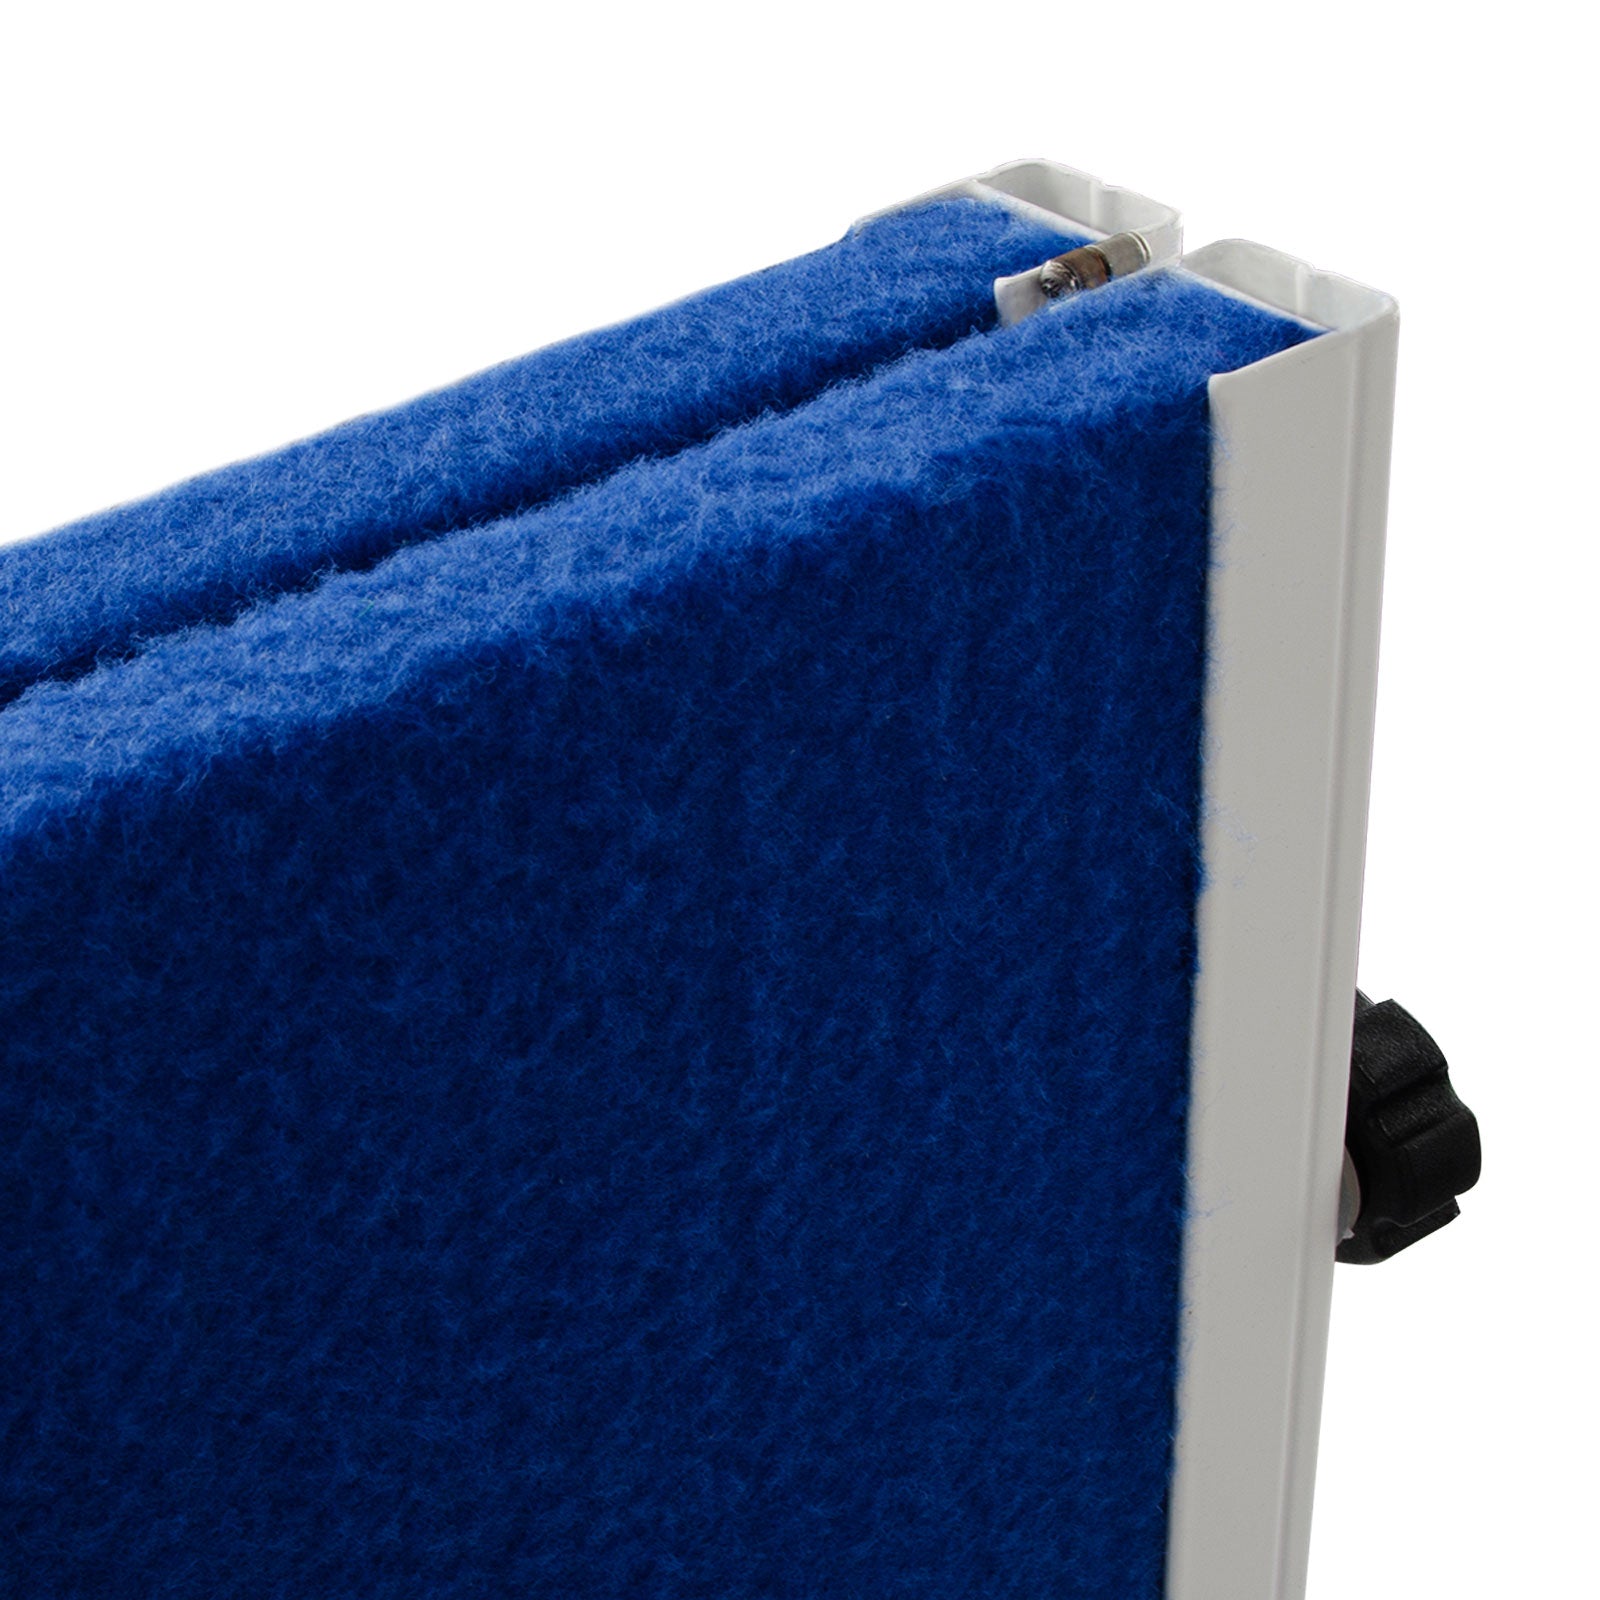 Filz-Moderationstafel Klappbar Mit Rollen 150x120 cm 2 Farben | Blau